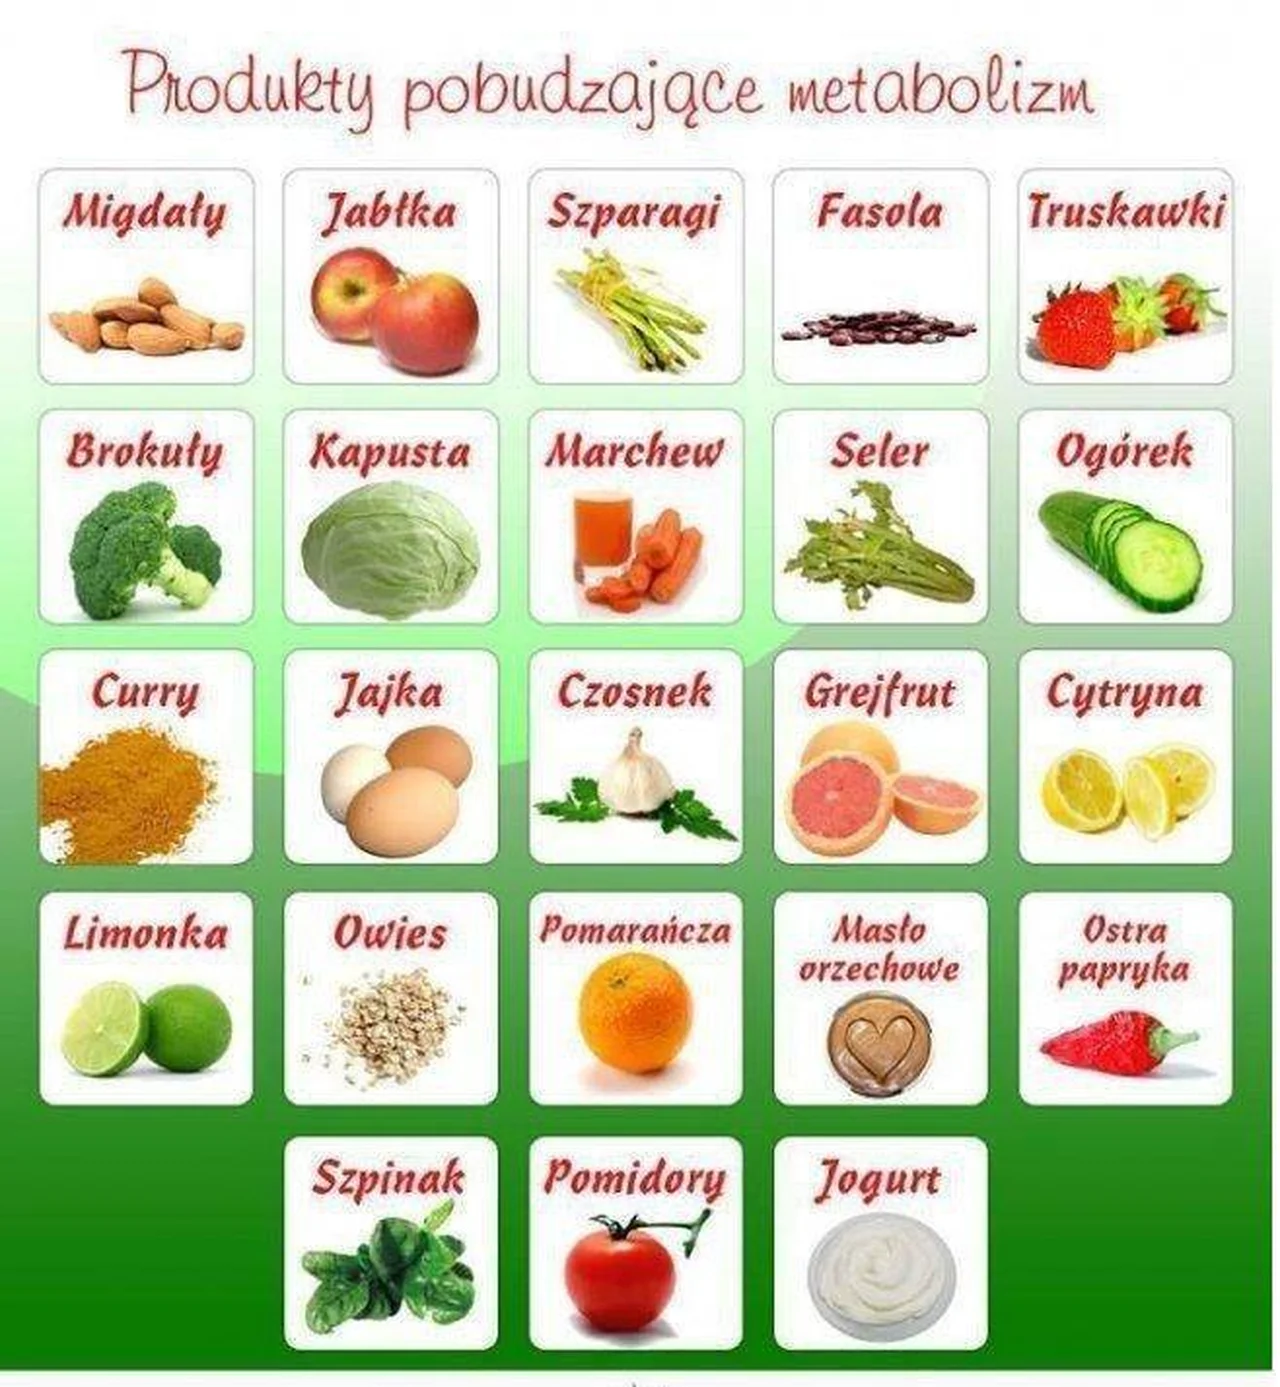 Produkty pobudzające metabolizm